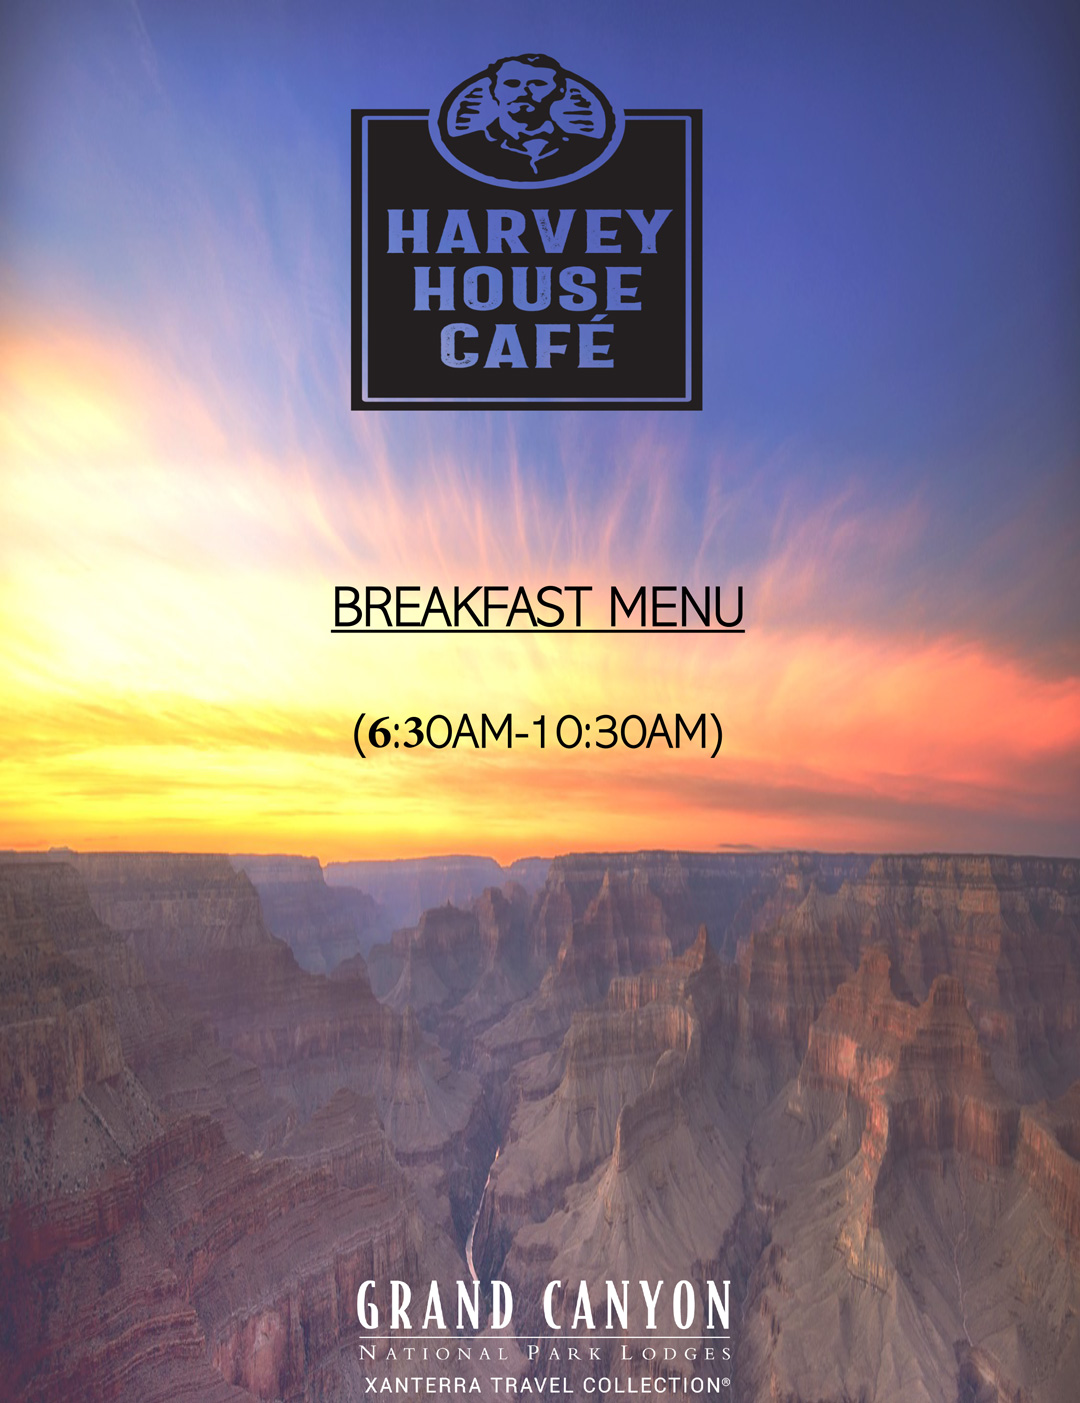 Harvey House Café Breakfast